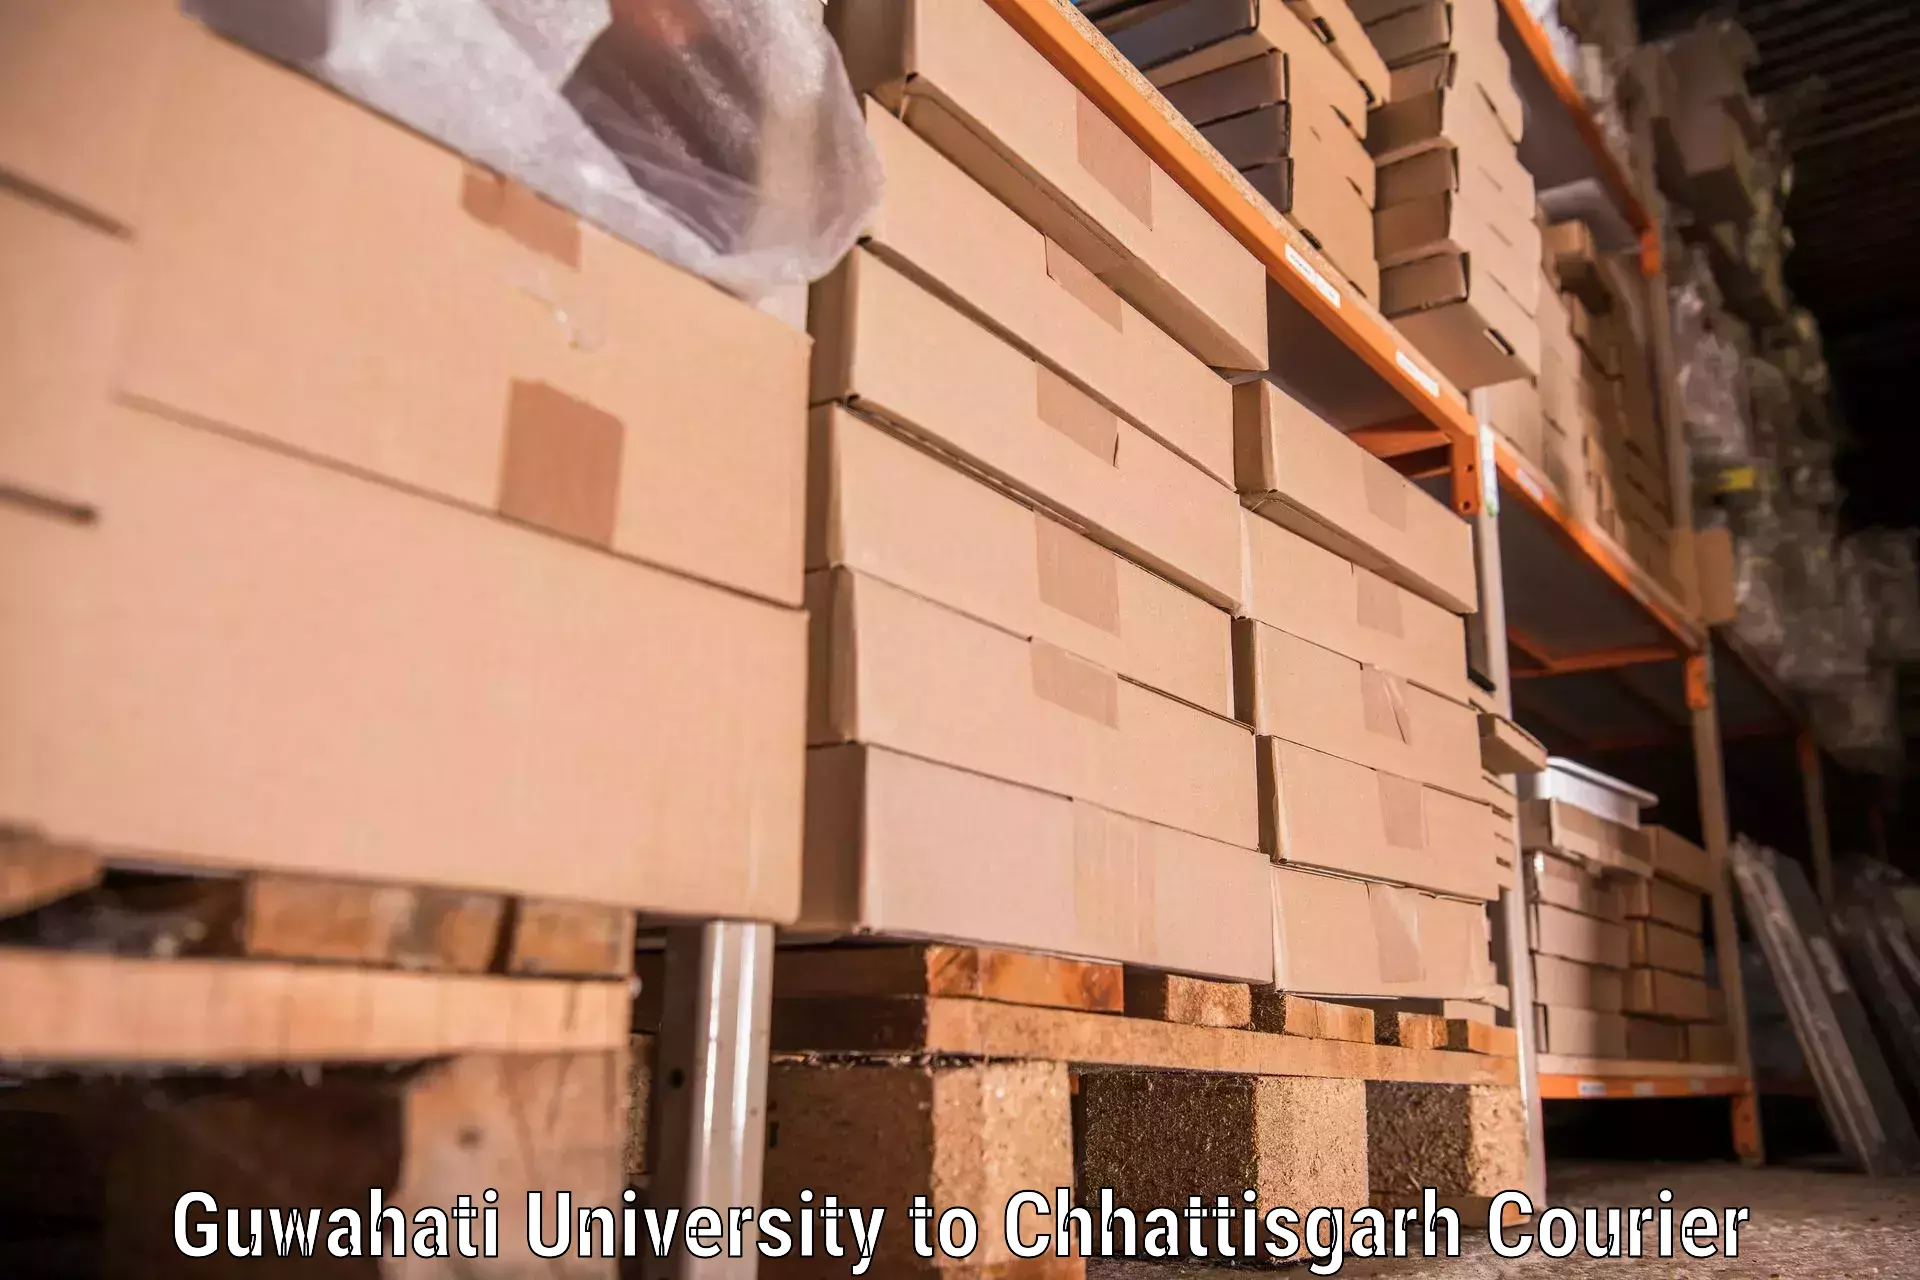 Furniture moving experts in Guwahati University to Dongargarh